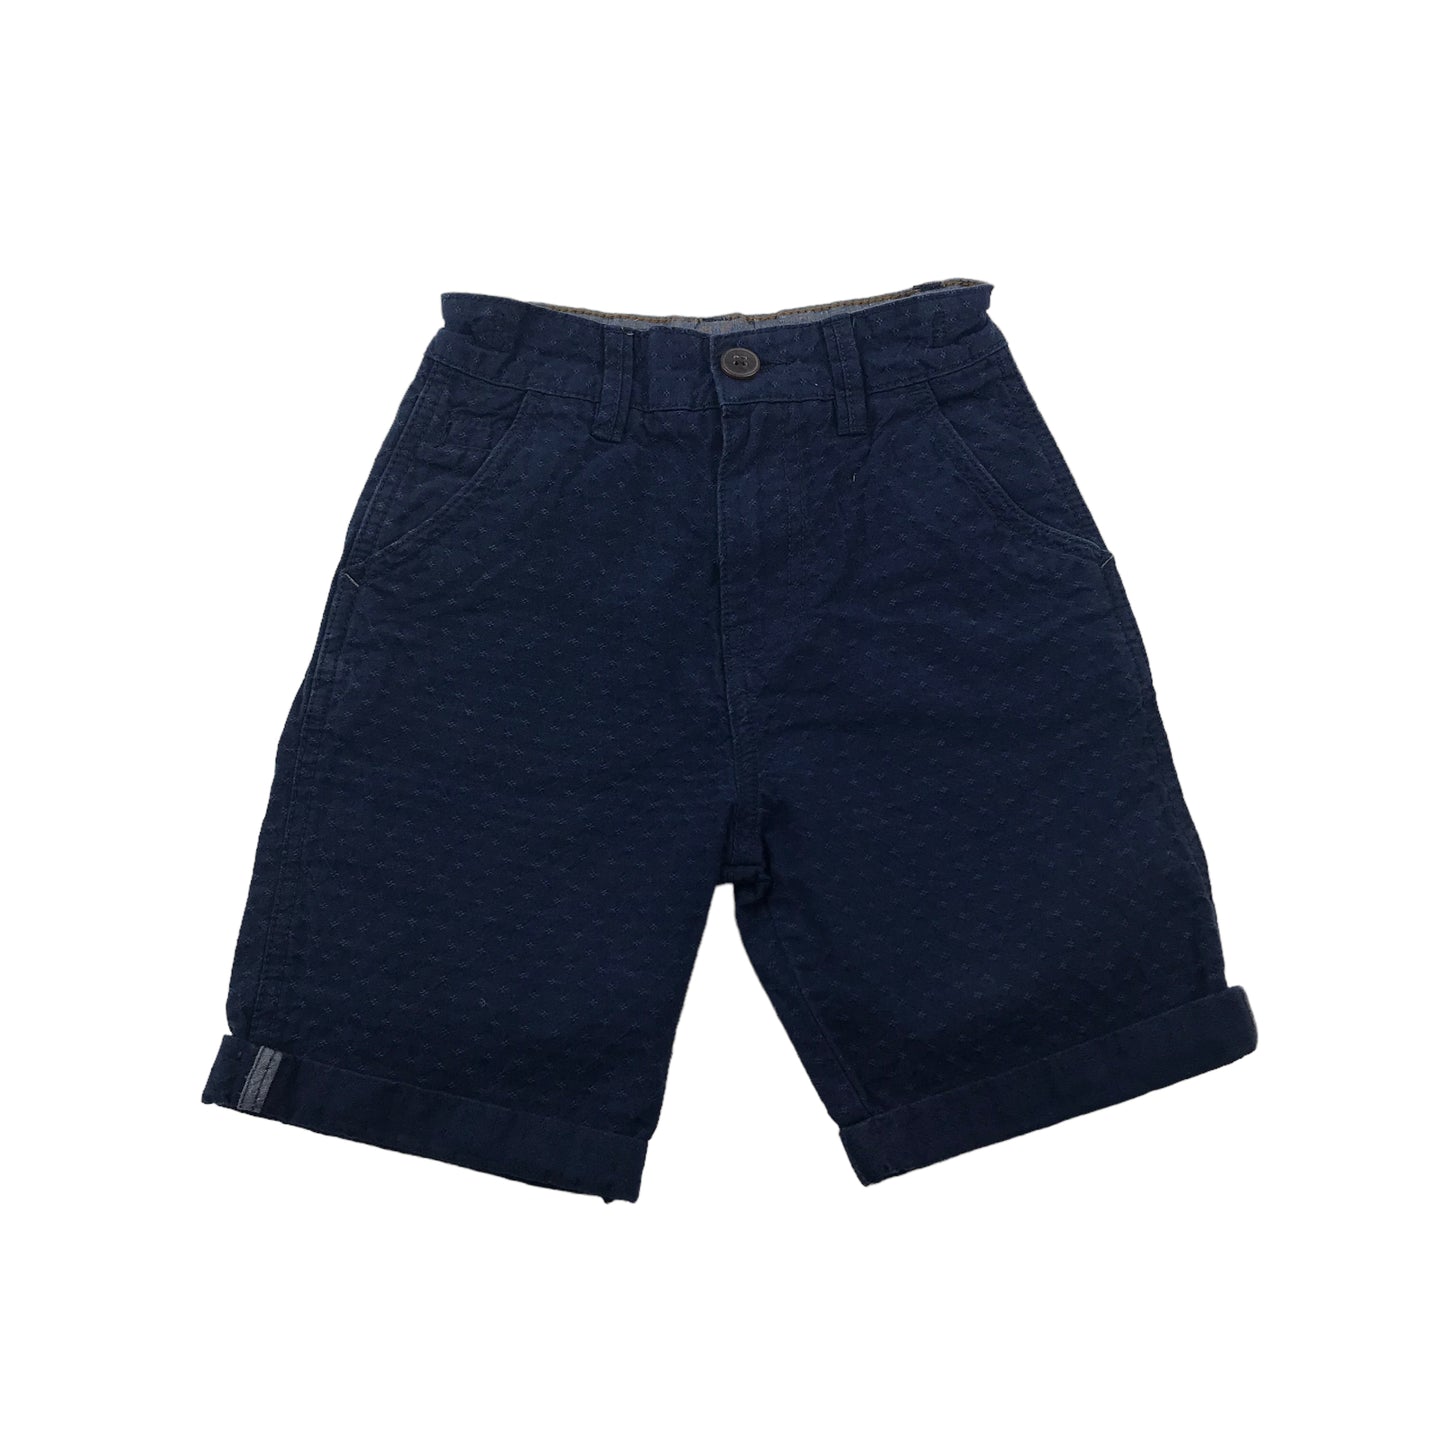 George Navy Blue Stitch Pattern Chino Shorts Age 5